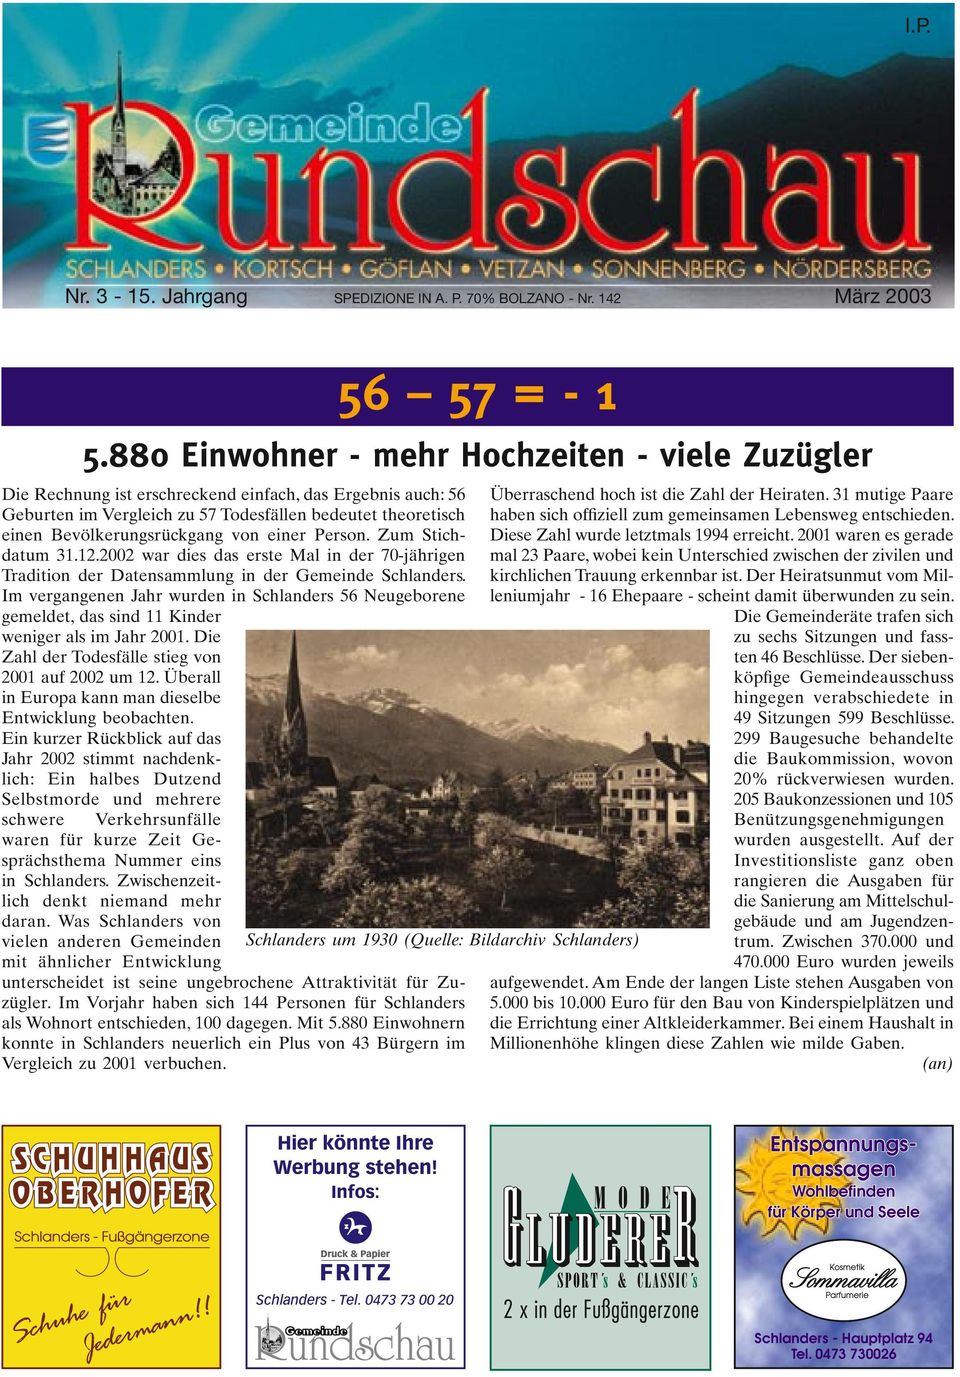 12.2002 war dies das erste Mal in der 70-jährigen Tradition der Datensammlung in der Gemeinde Schlanders.